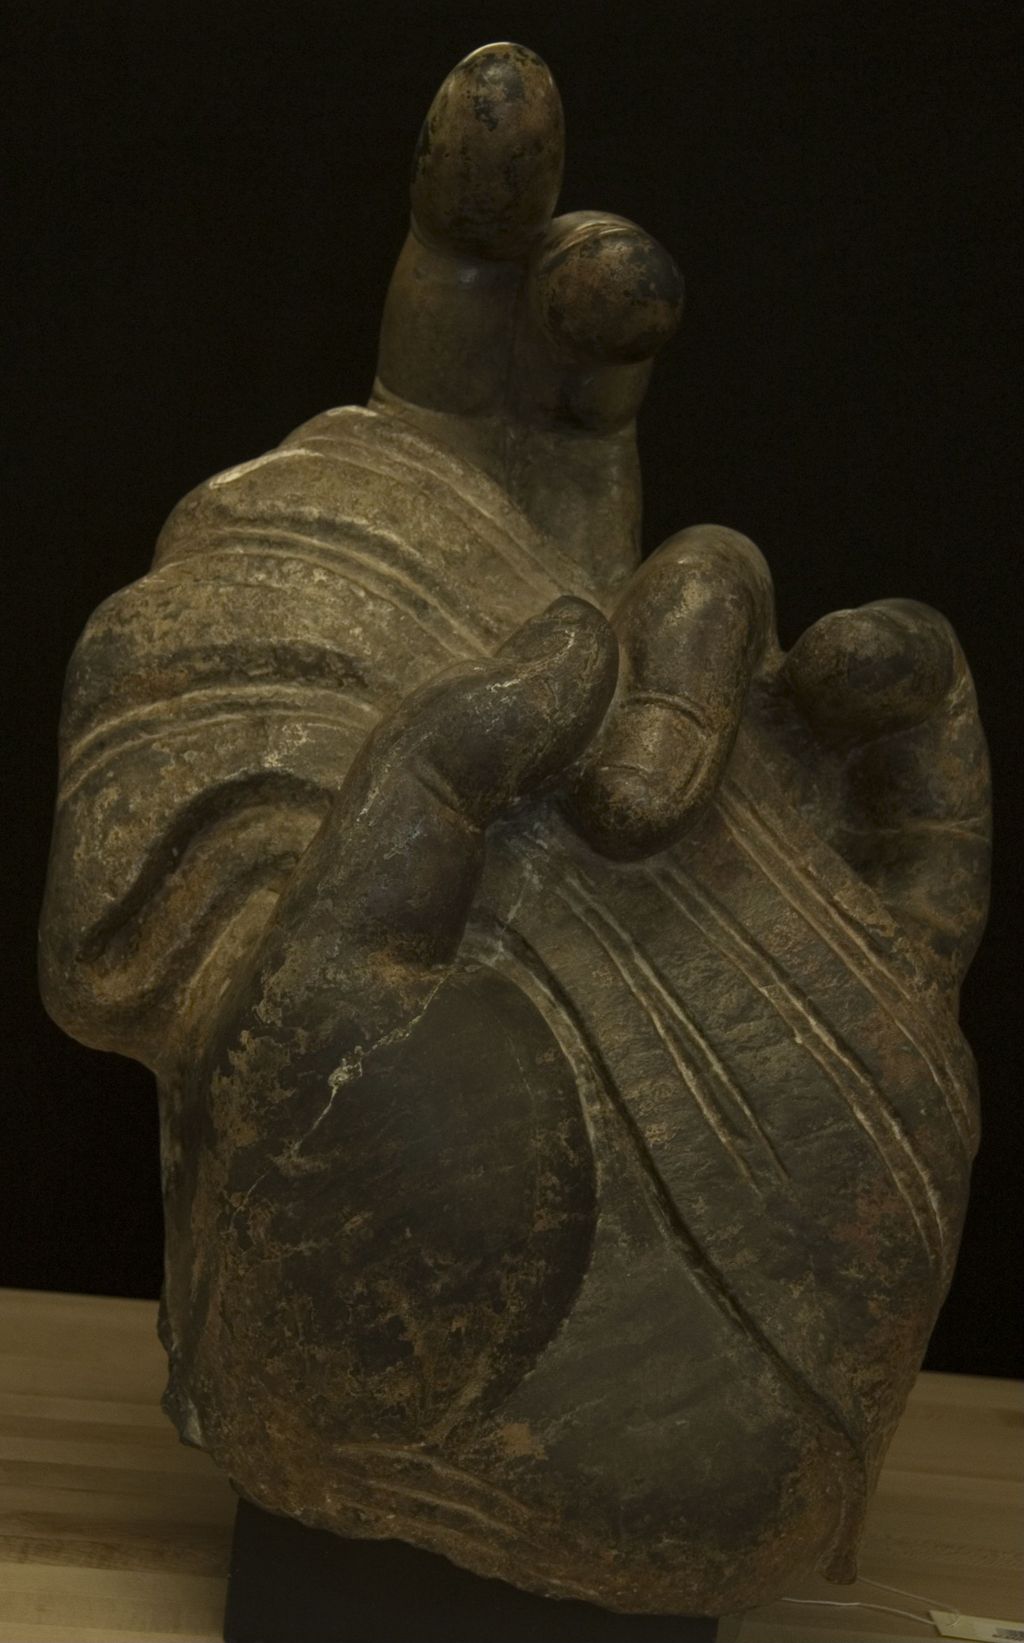 Miniature of Buddha Hand